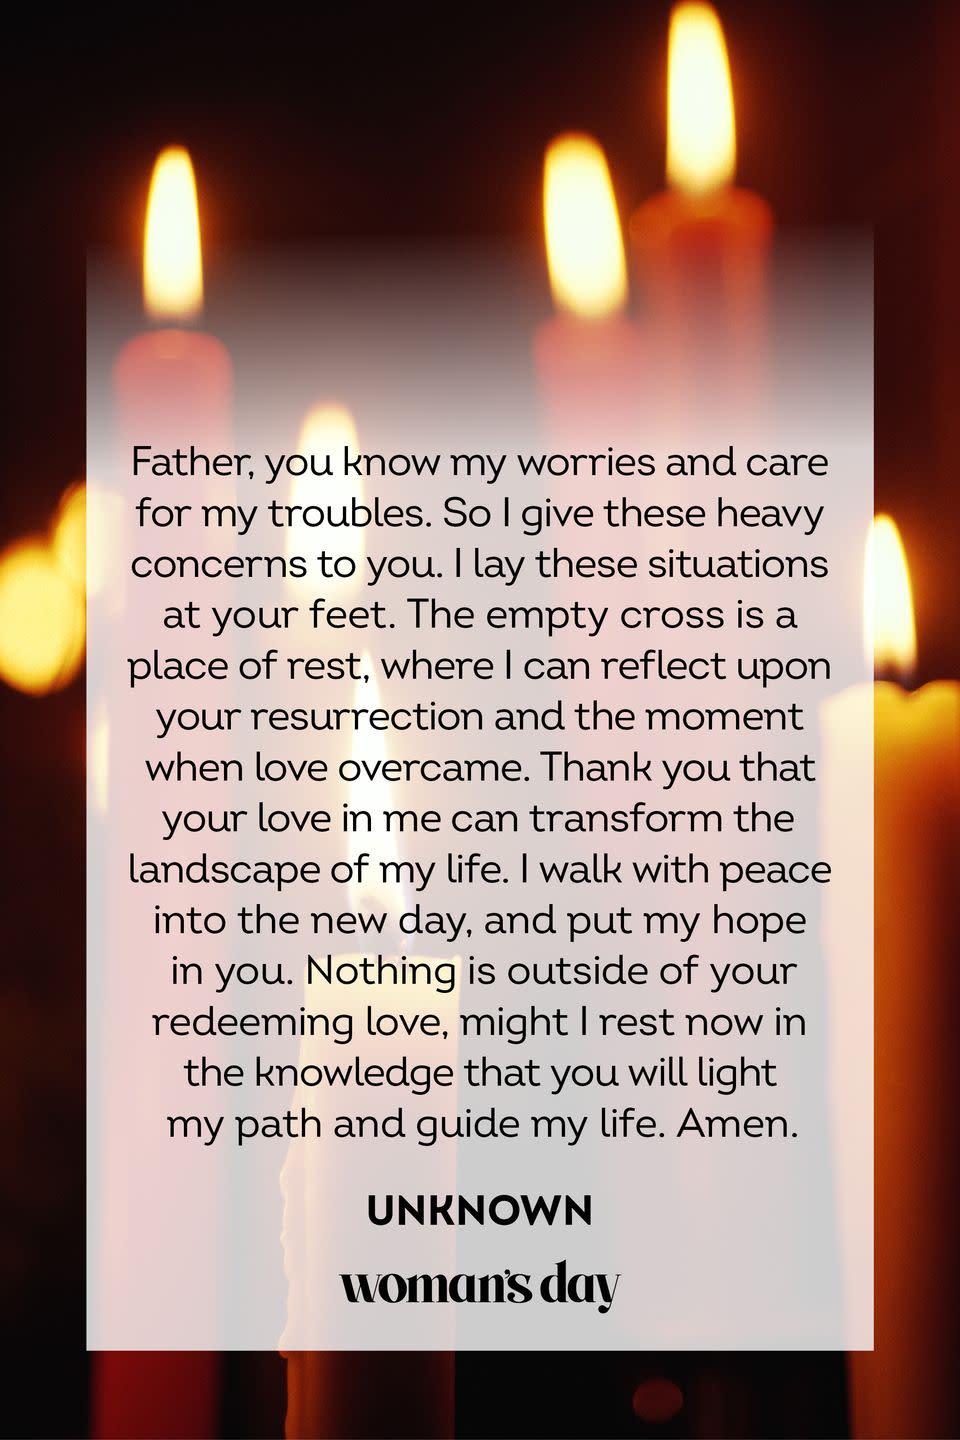 A Prayer for God's Love